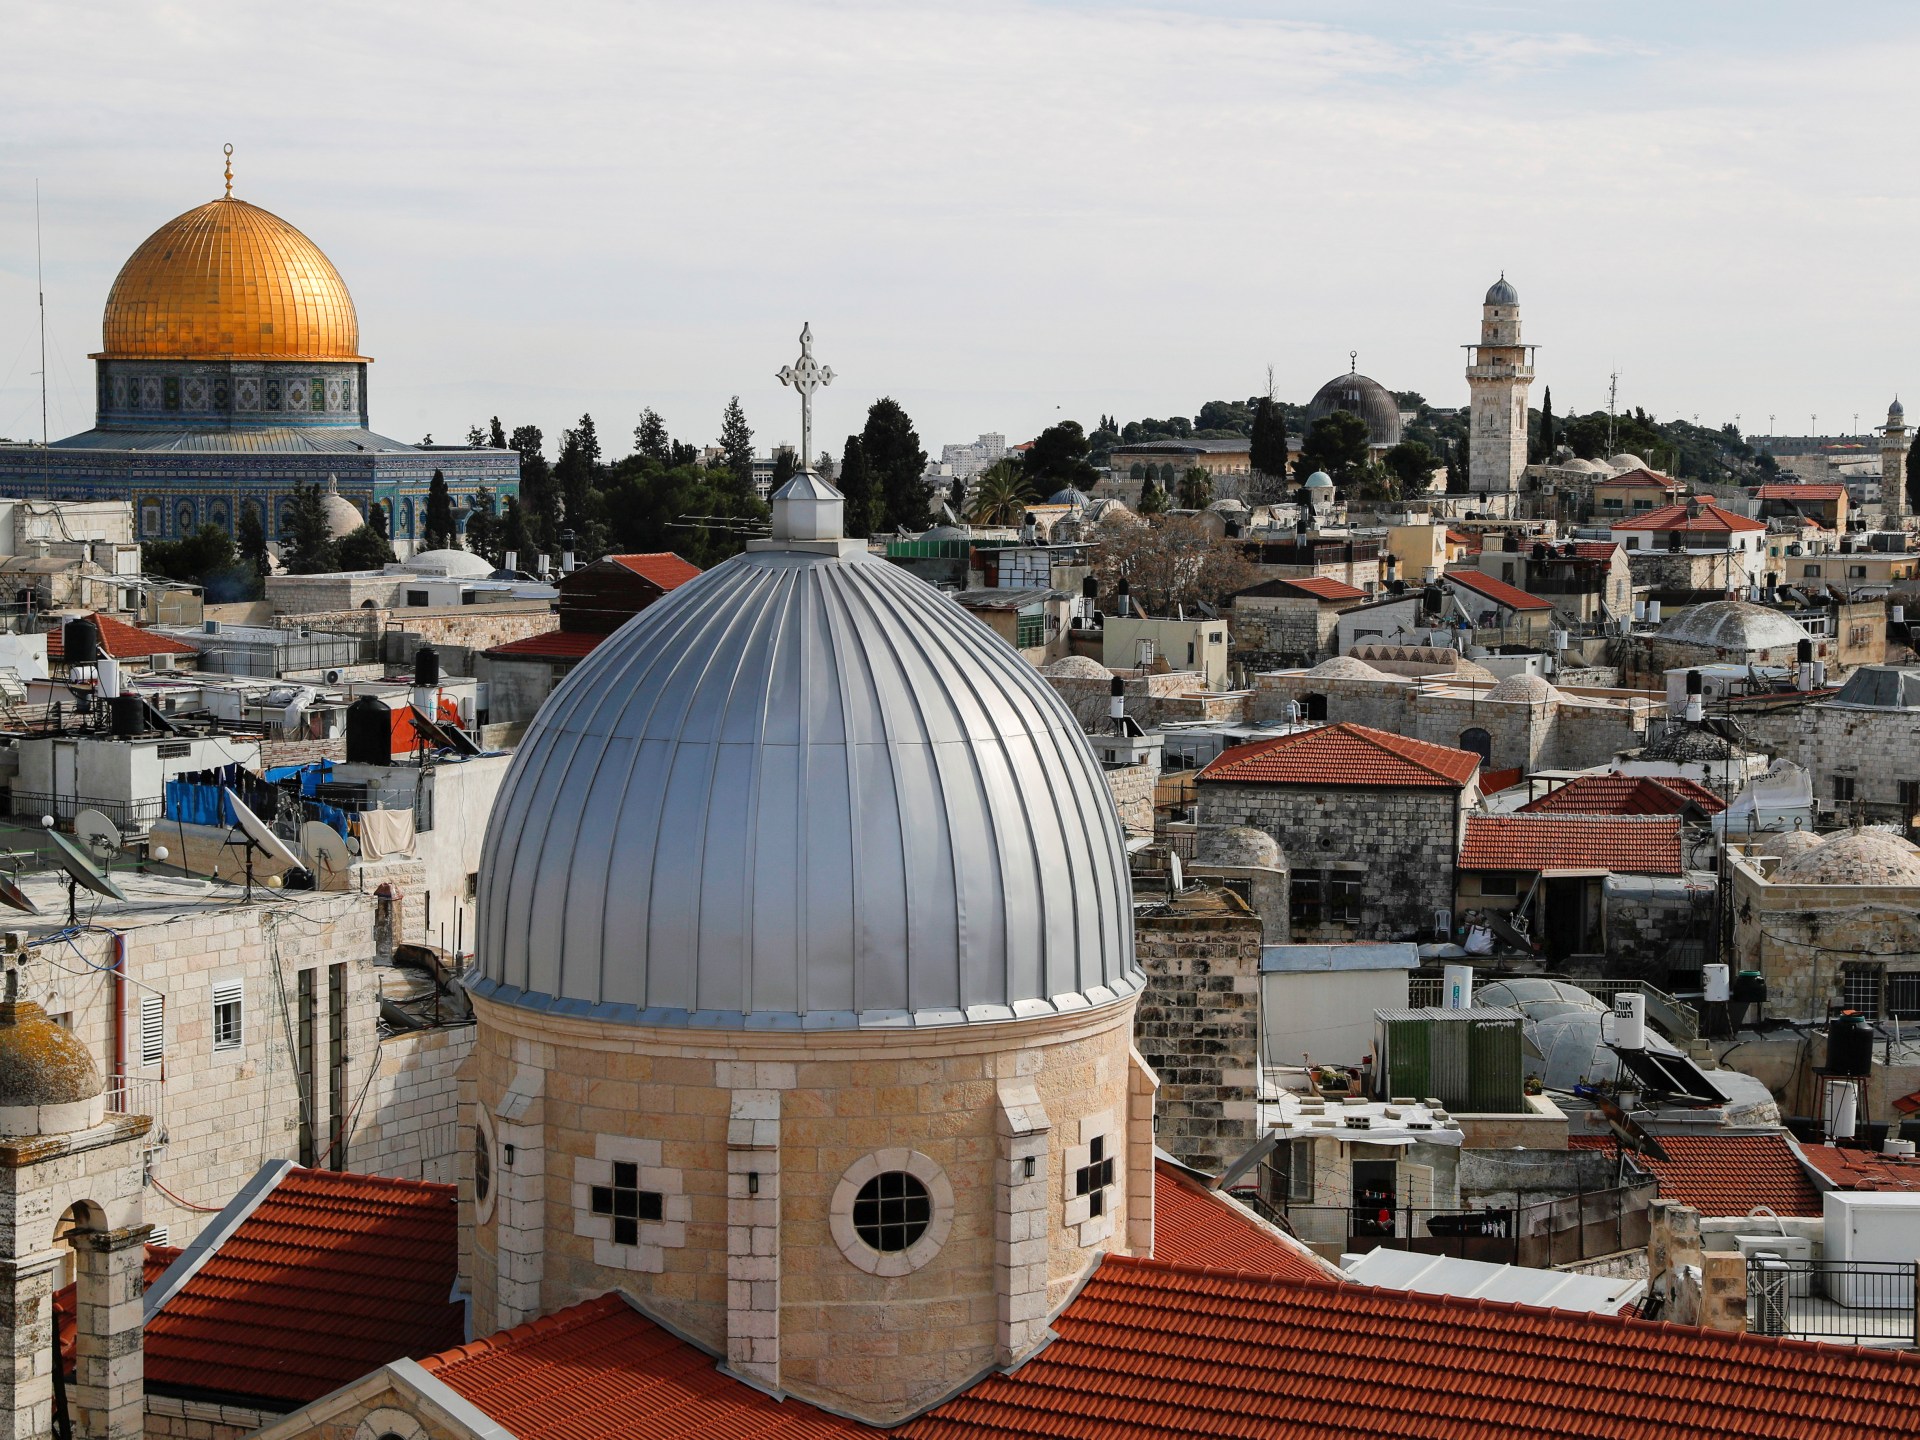 Australia wycofuje się z uznania Zachodniej Jerozolimy za stolicę Izraela |  Wiadomości o konflikcie izraelsko-palestyńskim